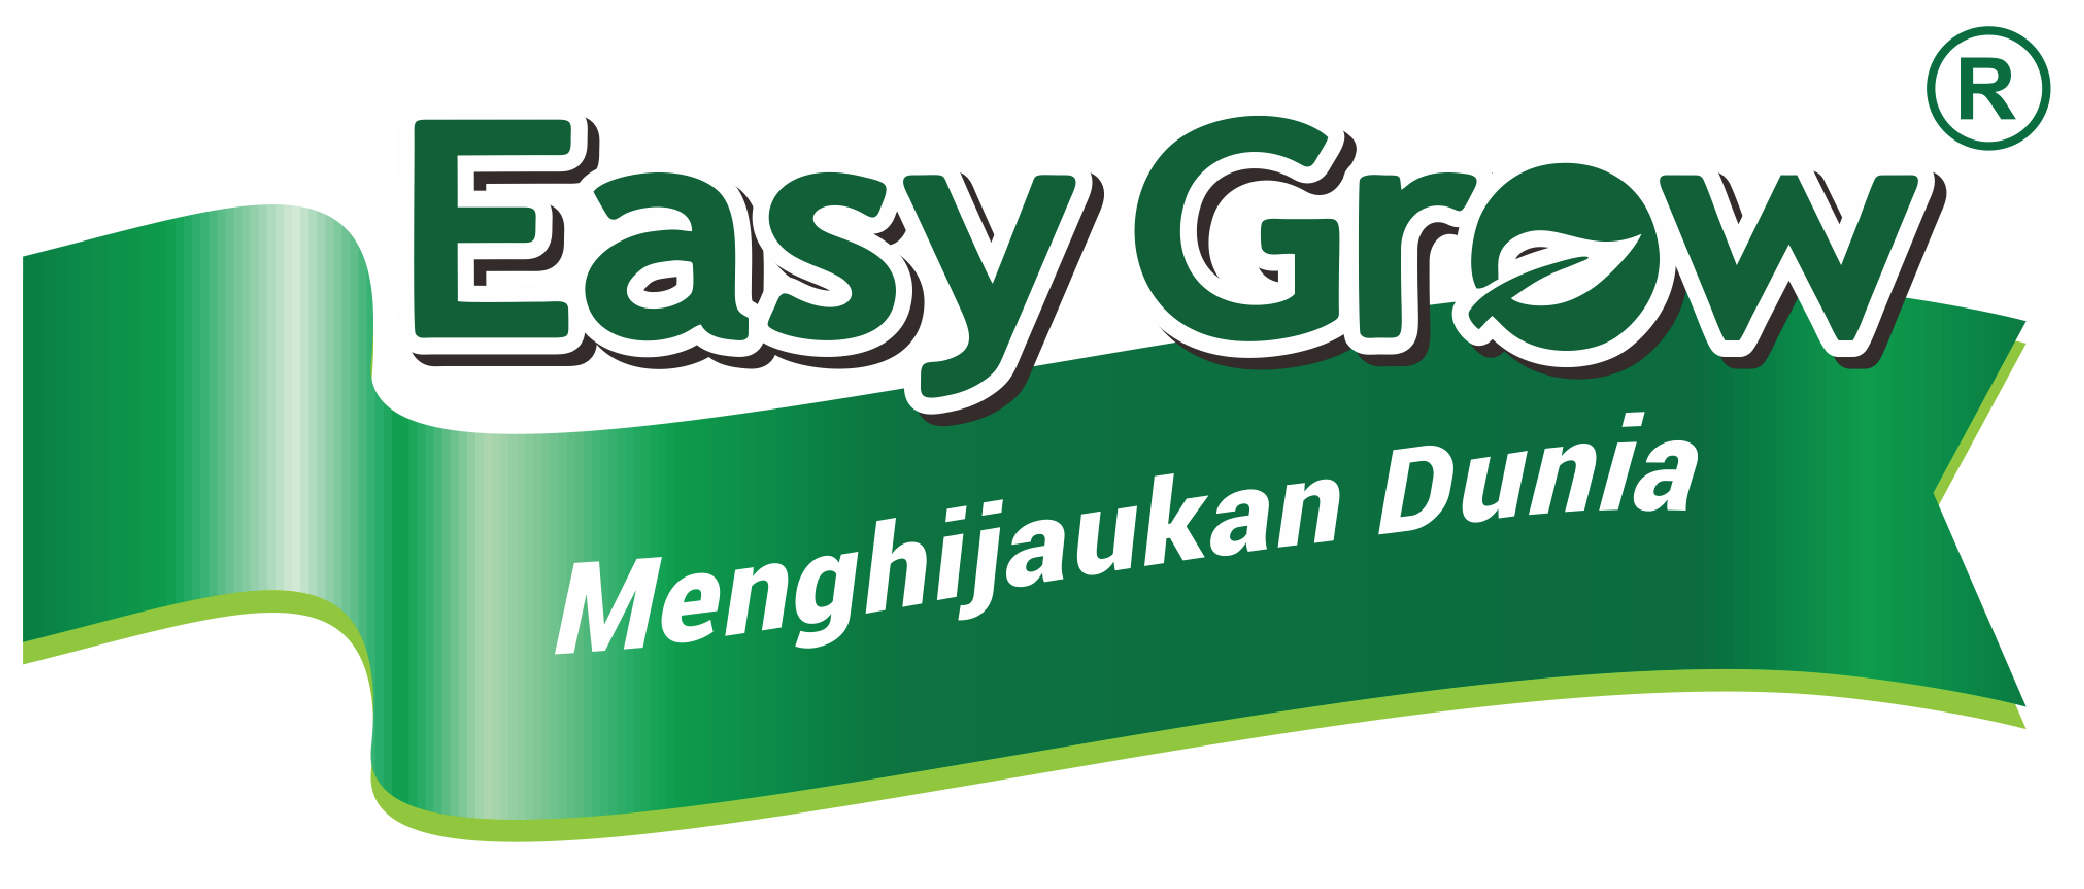 easygrow-01 (1) (1)